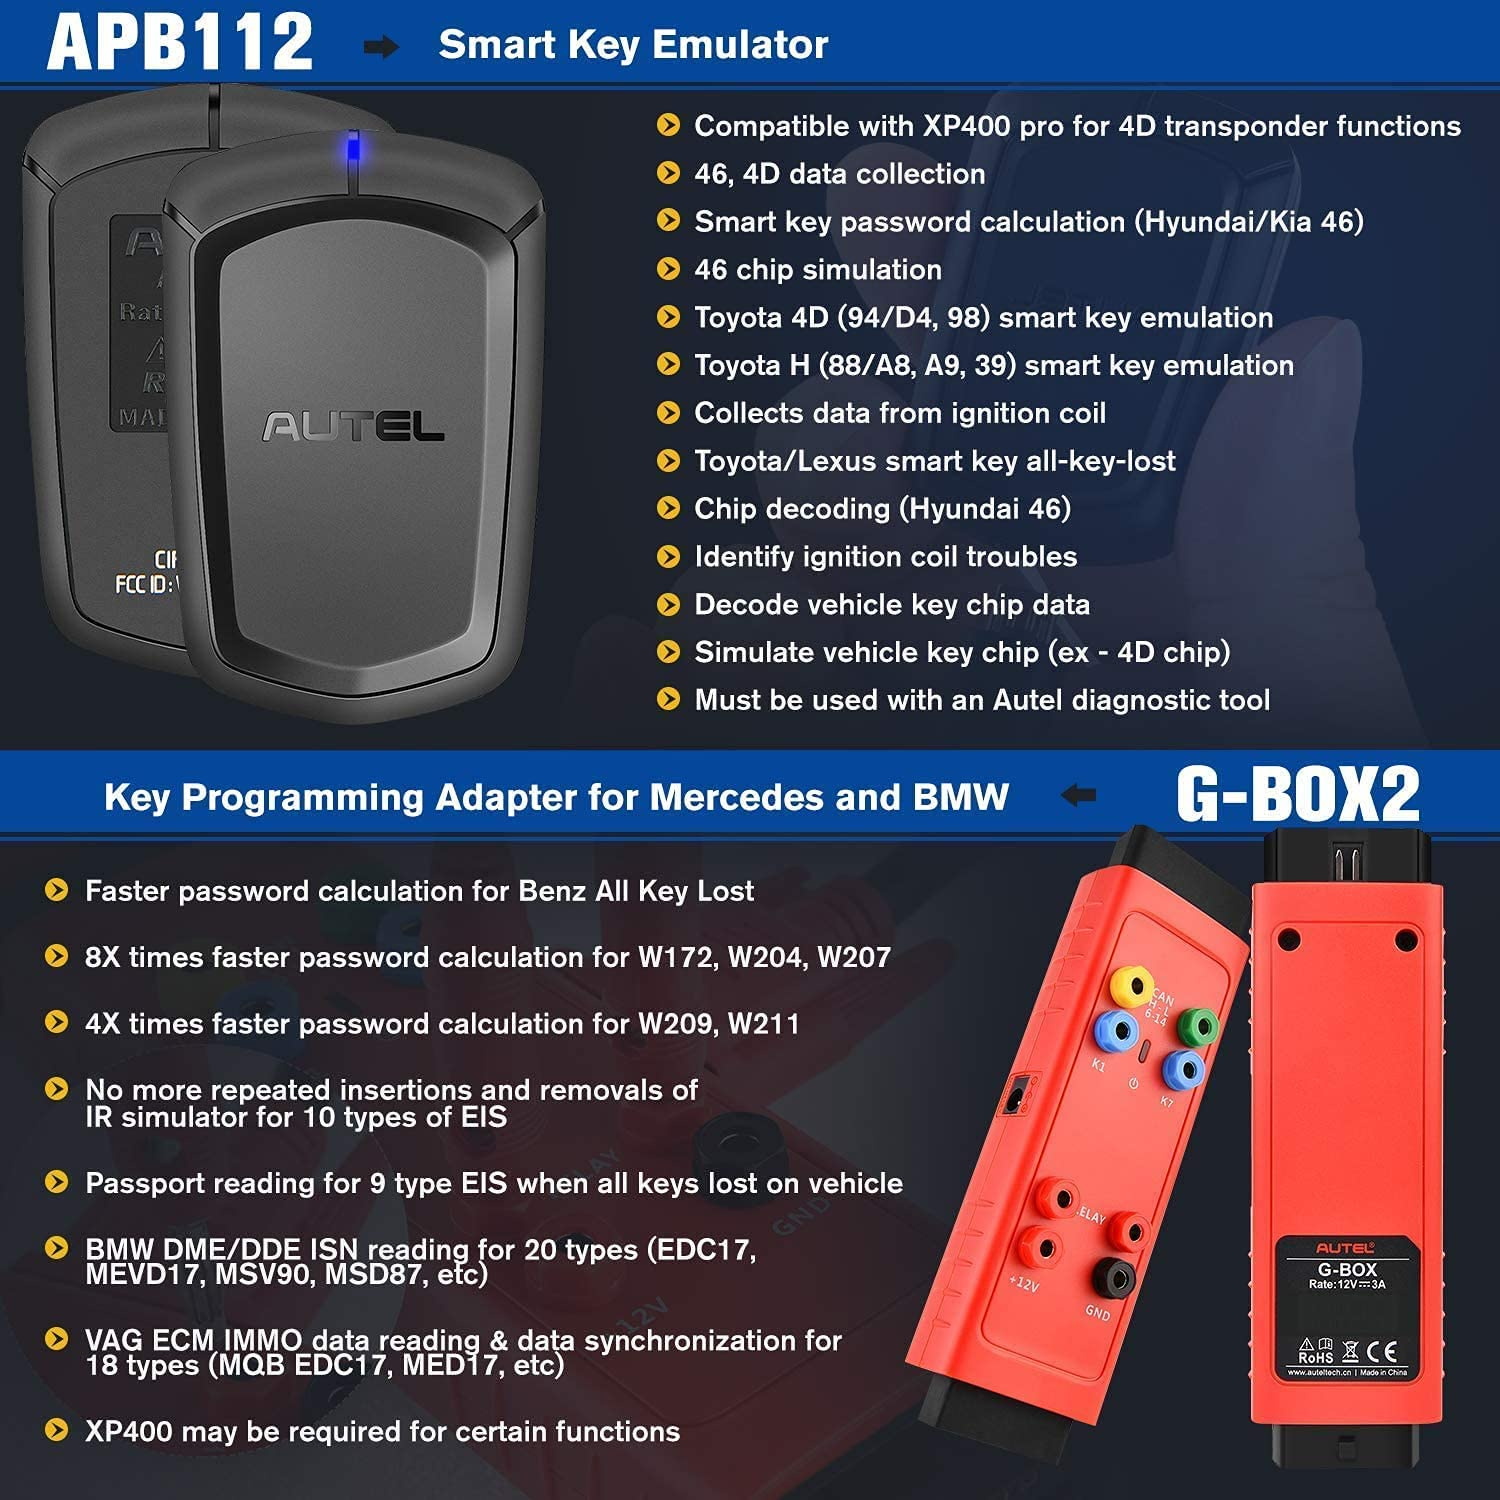 Autel IM508 II (Autel IM508S) Plus APB112 and G-BOX2